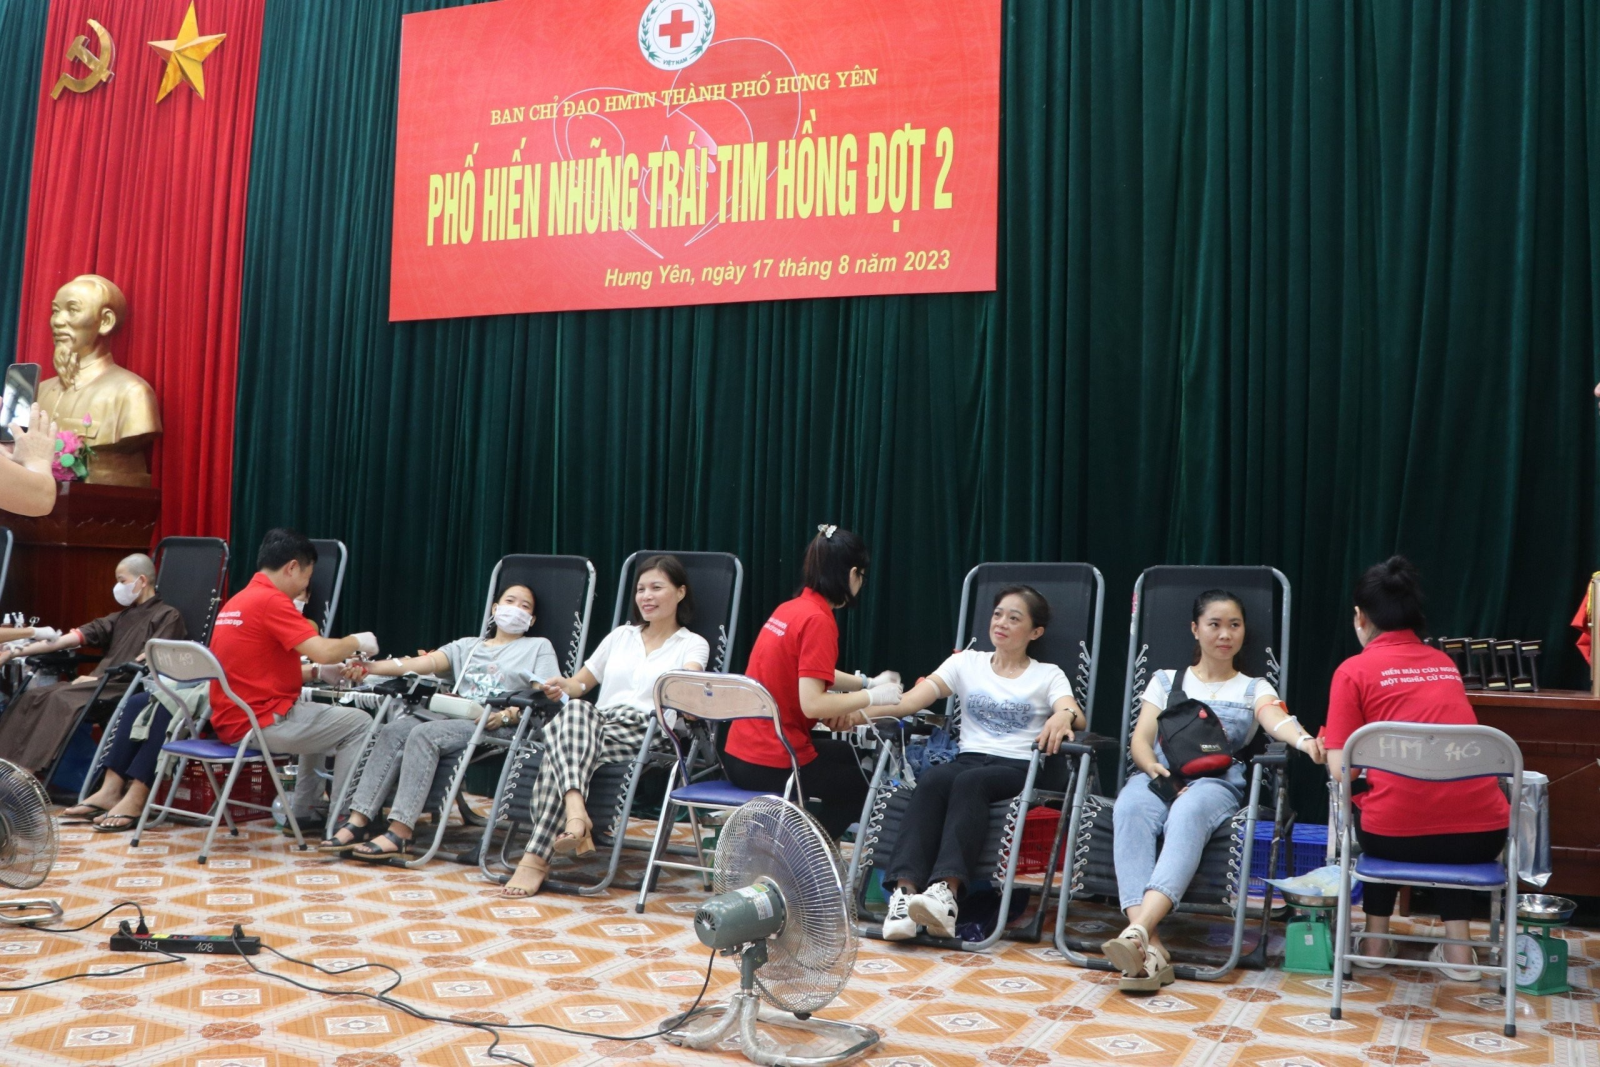 Ngày hội hiến máu tình nguyện “Phố Hiến những trái tim hồng” đợt II năm 2023